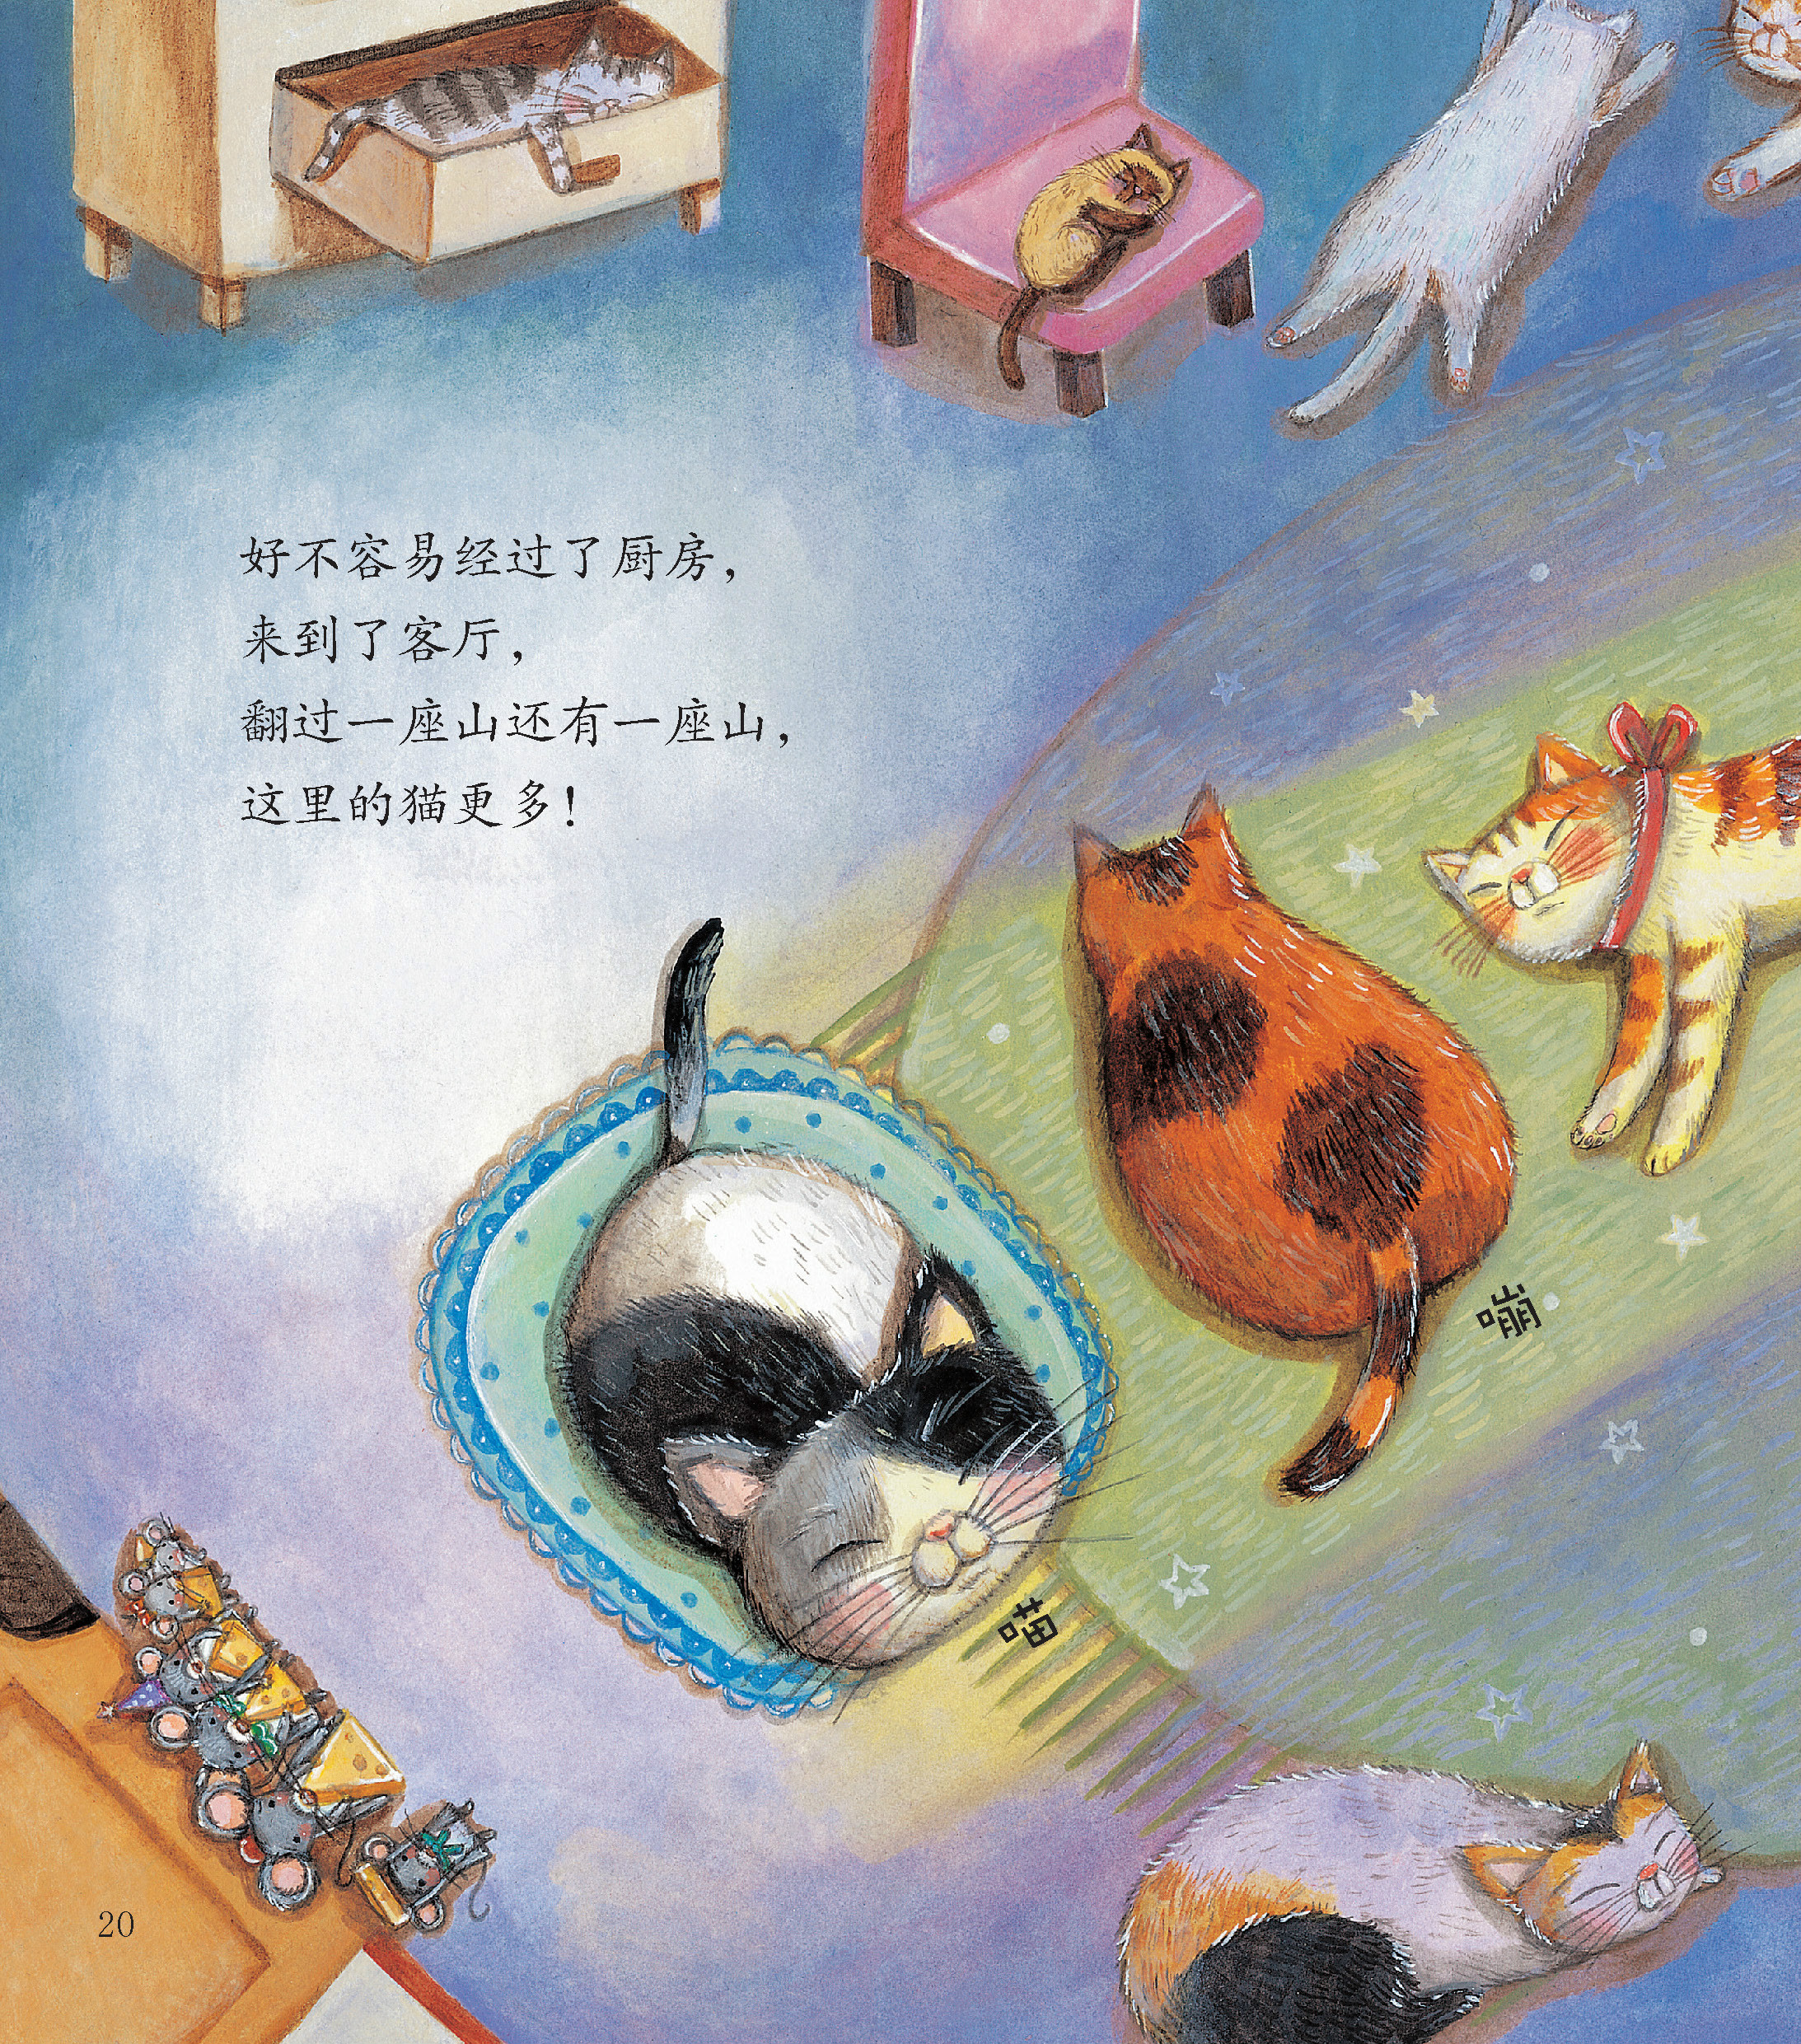 绘本连载 好玩的数学 喵喵猫尖尖猫嘣嘣猫 3-6岁 亲子阅读